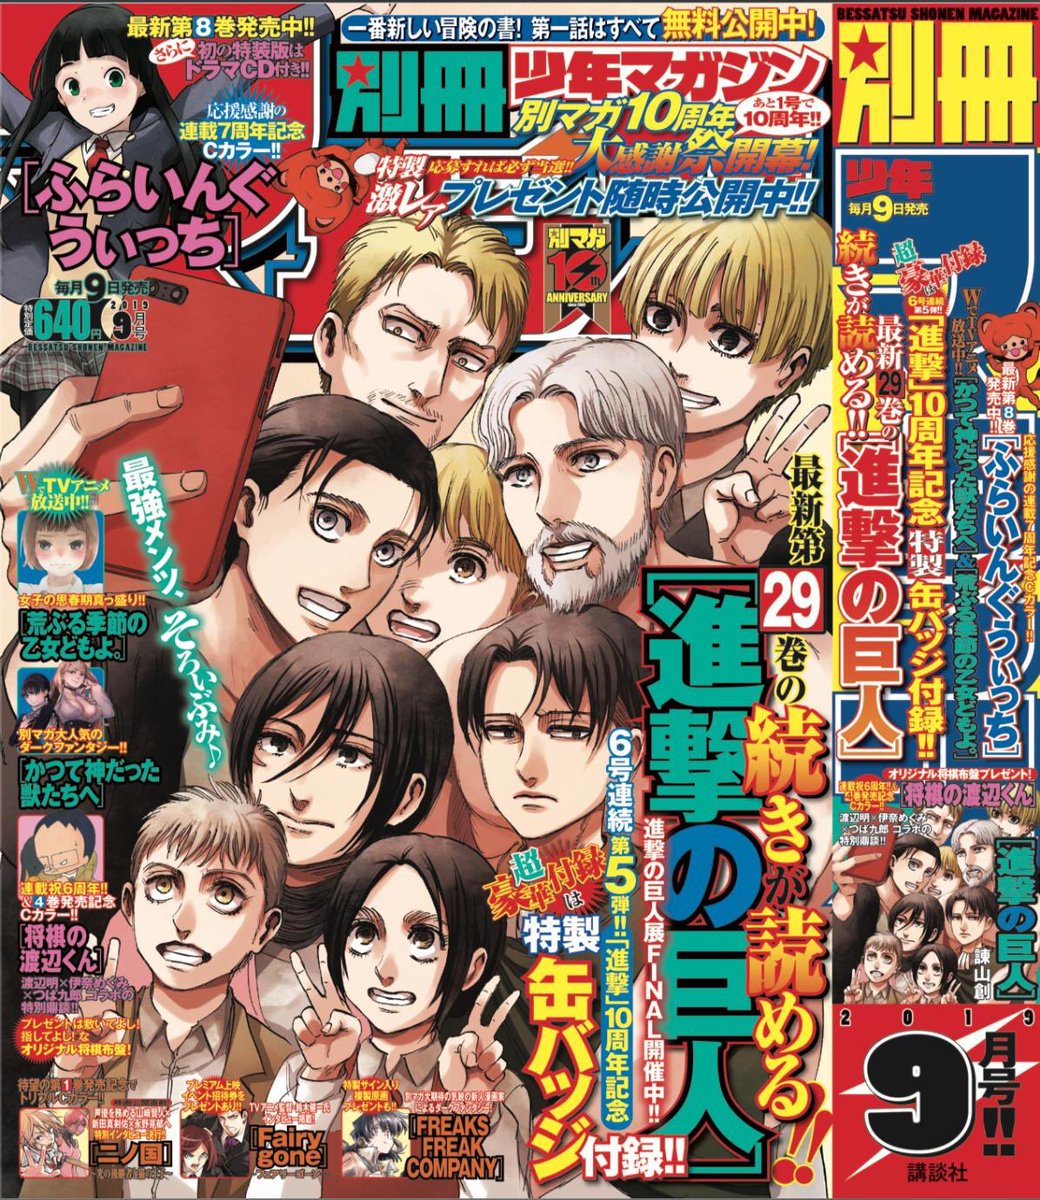 進撃の巨人 | 別冊少年マガジン 2019年9月号表紙 |  Attack on Titan Manga Cover